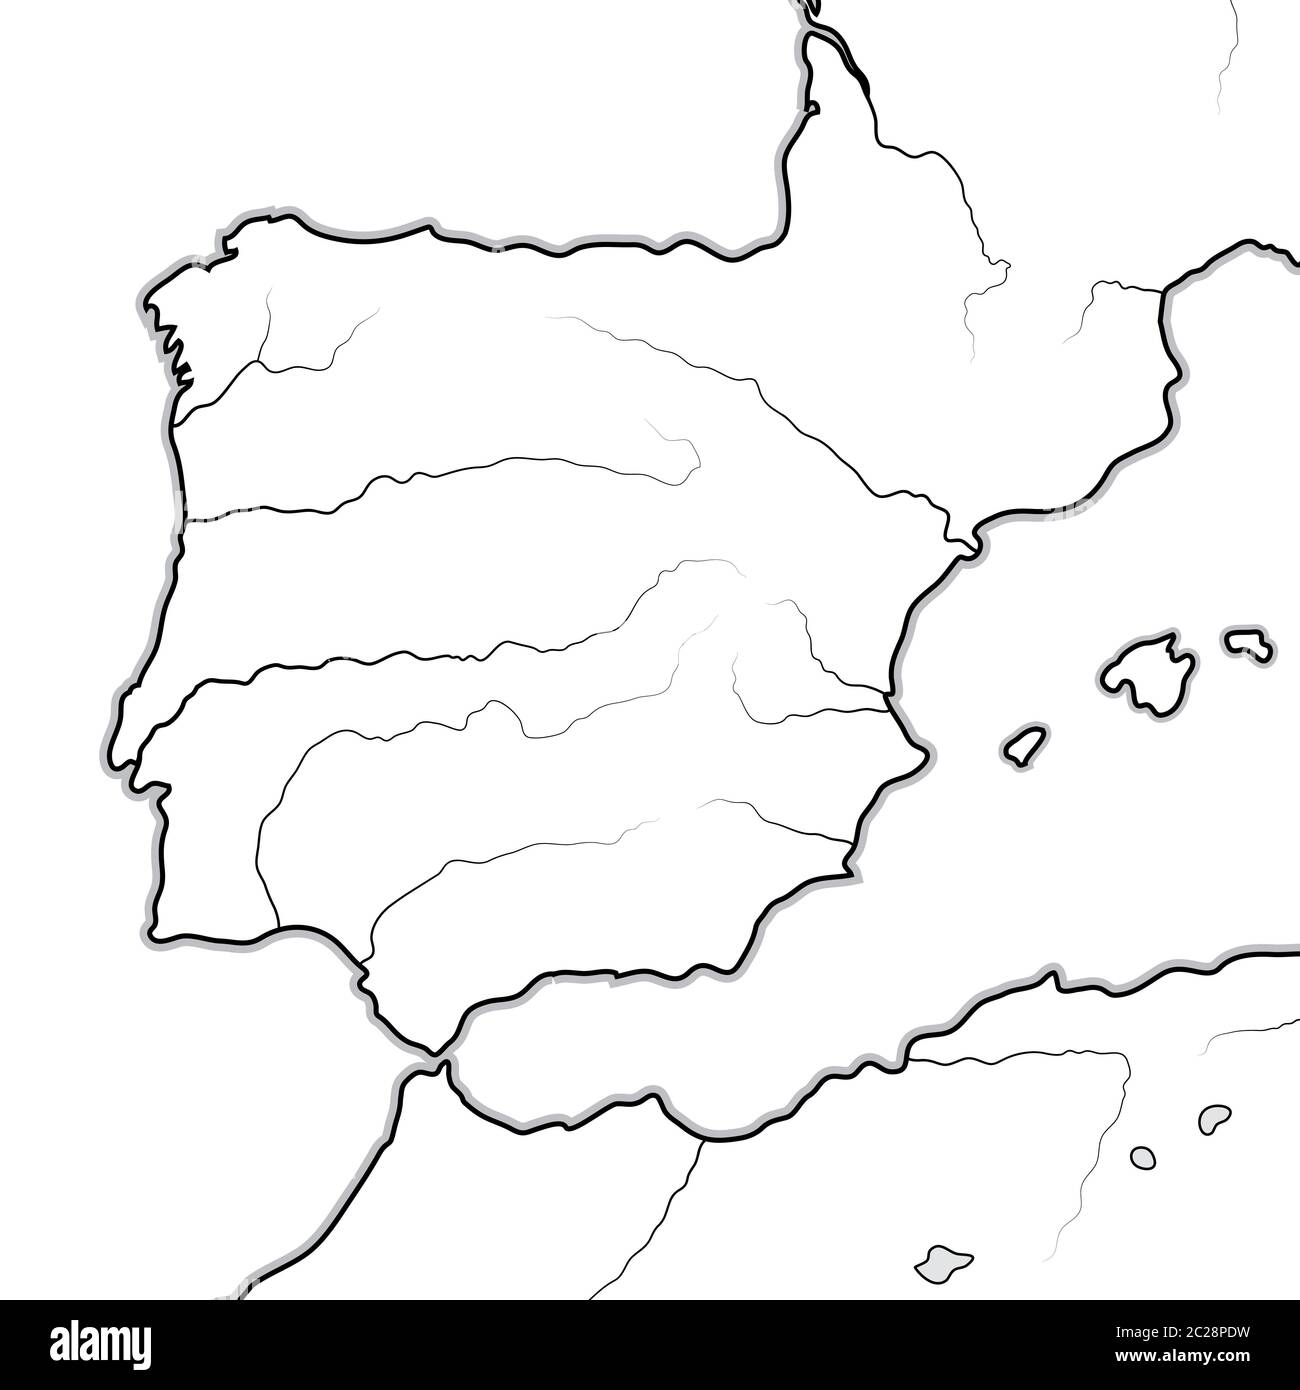 Carte des pays ESPAGNOLS: Espagne, Portugal, Catalogne, Iberia, les Pyrénées. Carte géographique. Banque D'Images